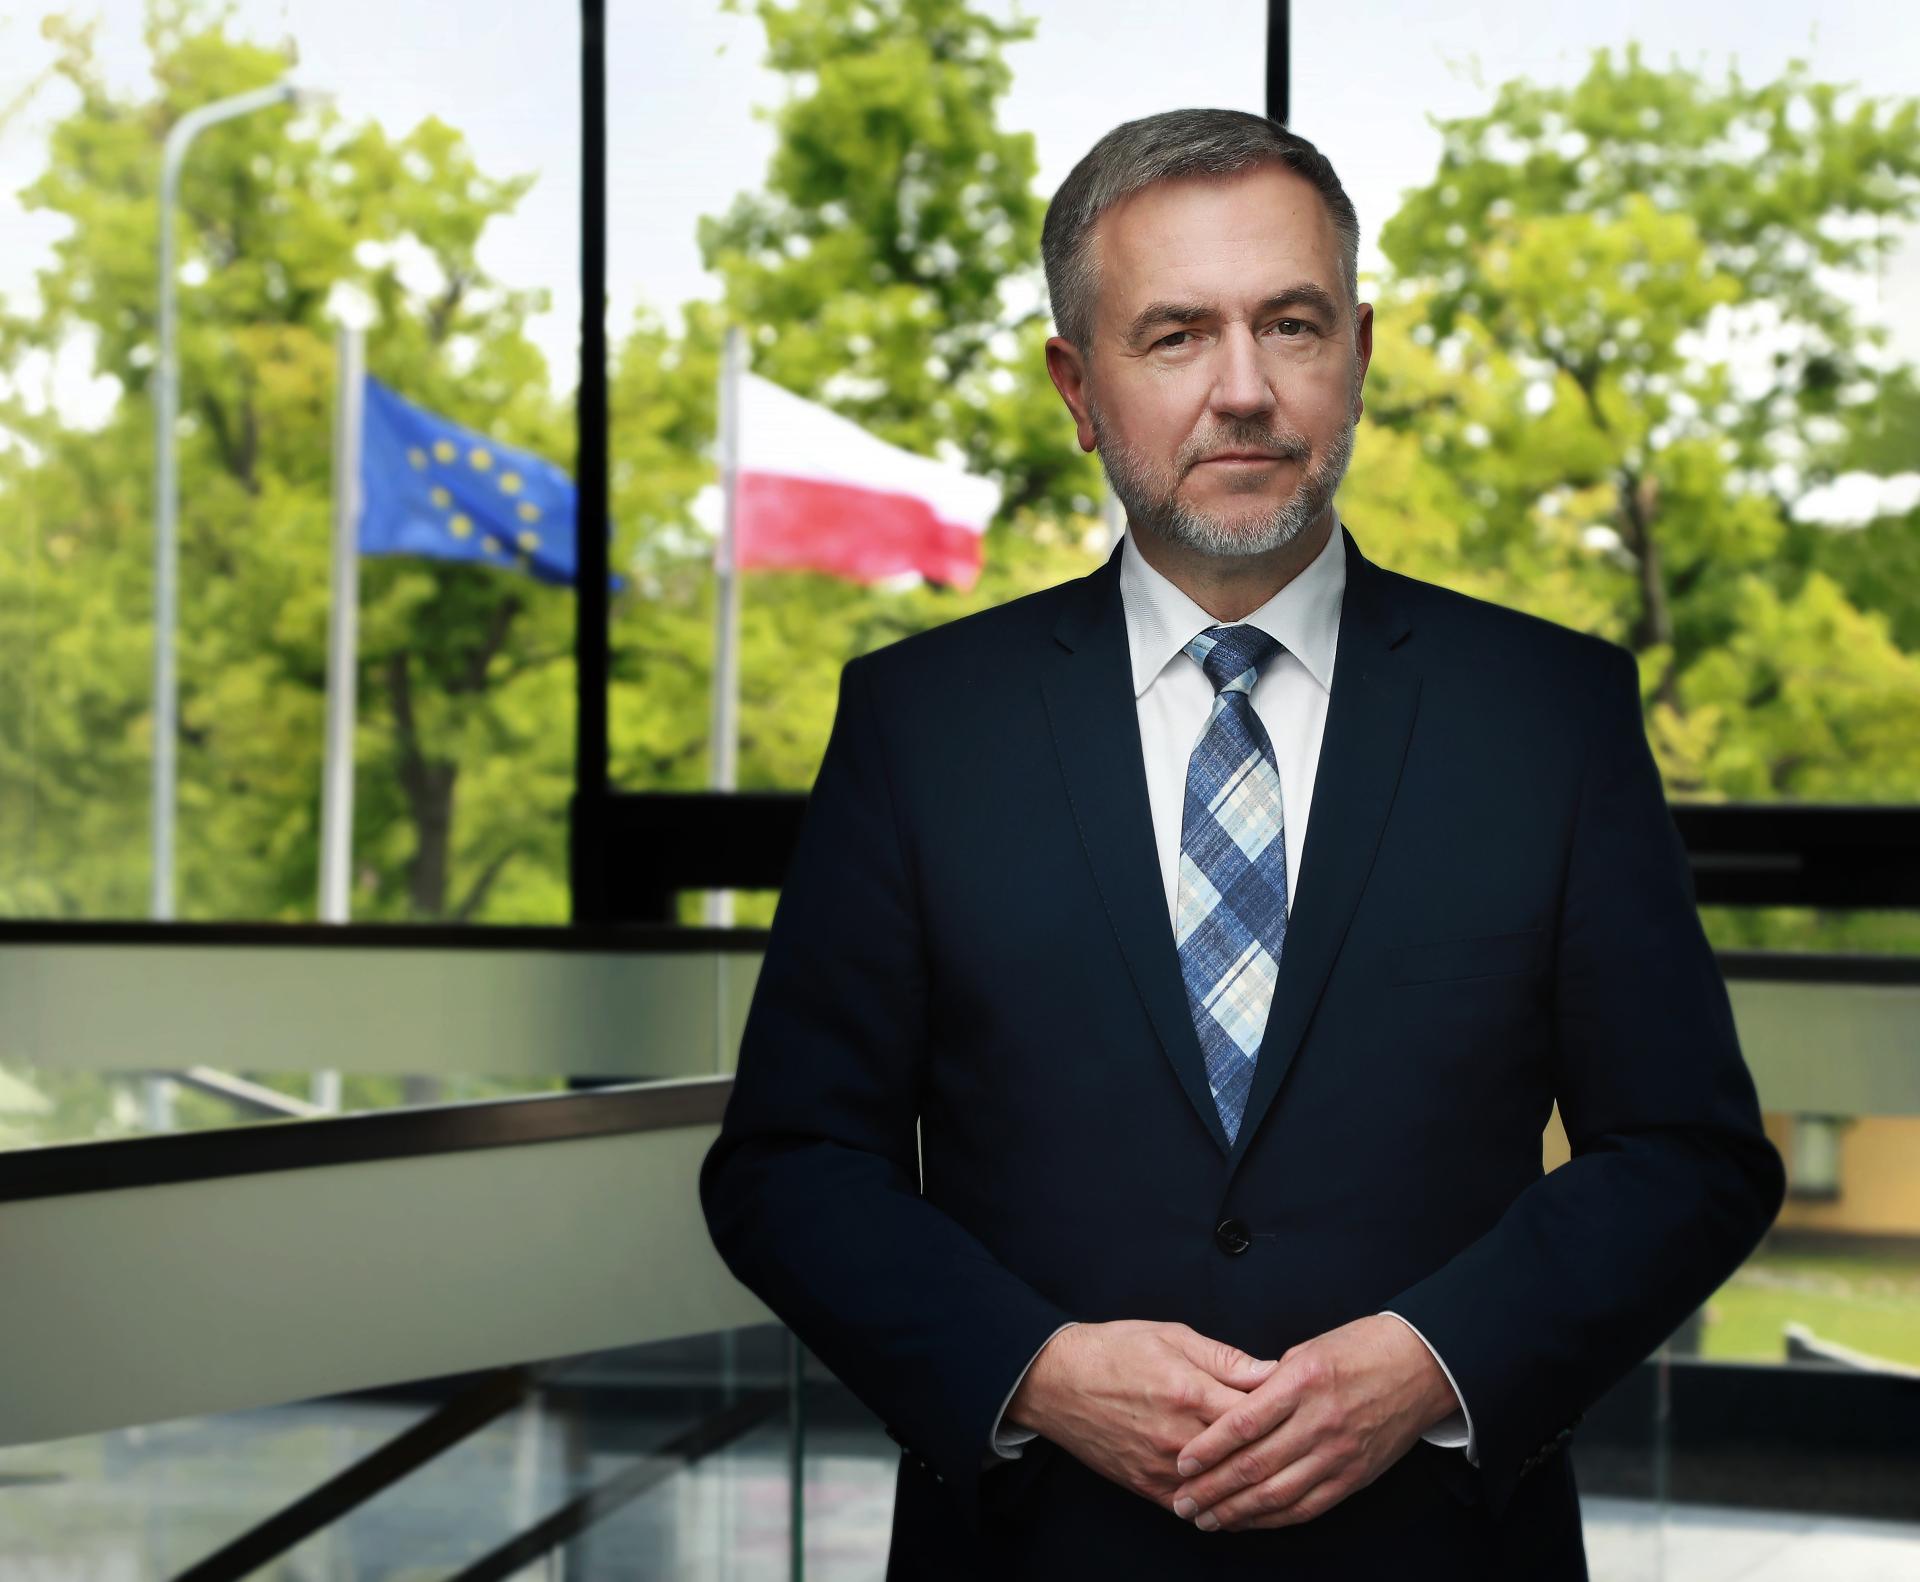 Marszałek Marek Woźniak ponownie wiceprzewodniczącym Komitetu Regionów - zobacz więcej